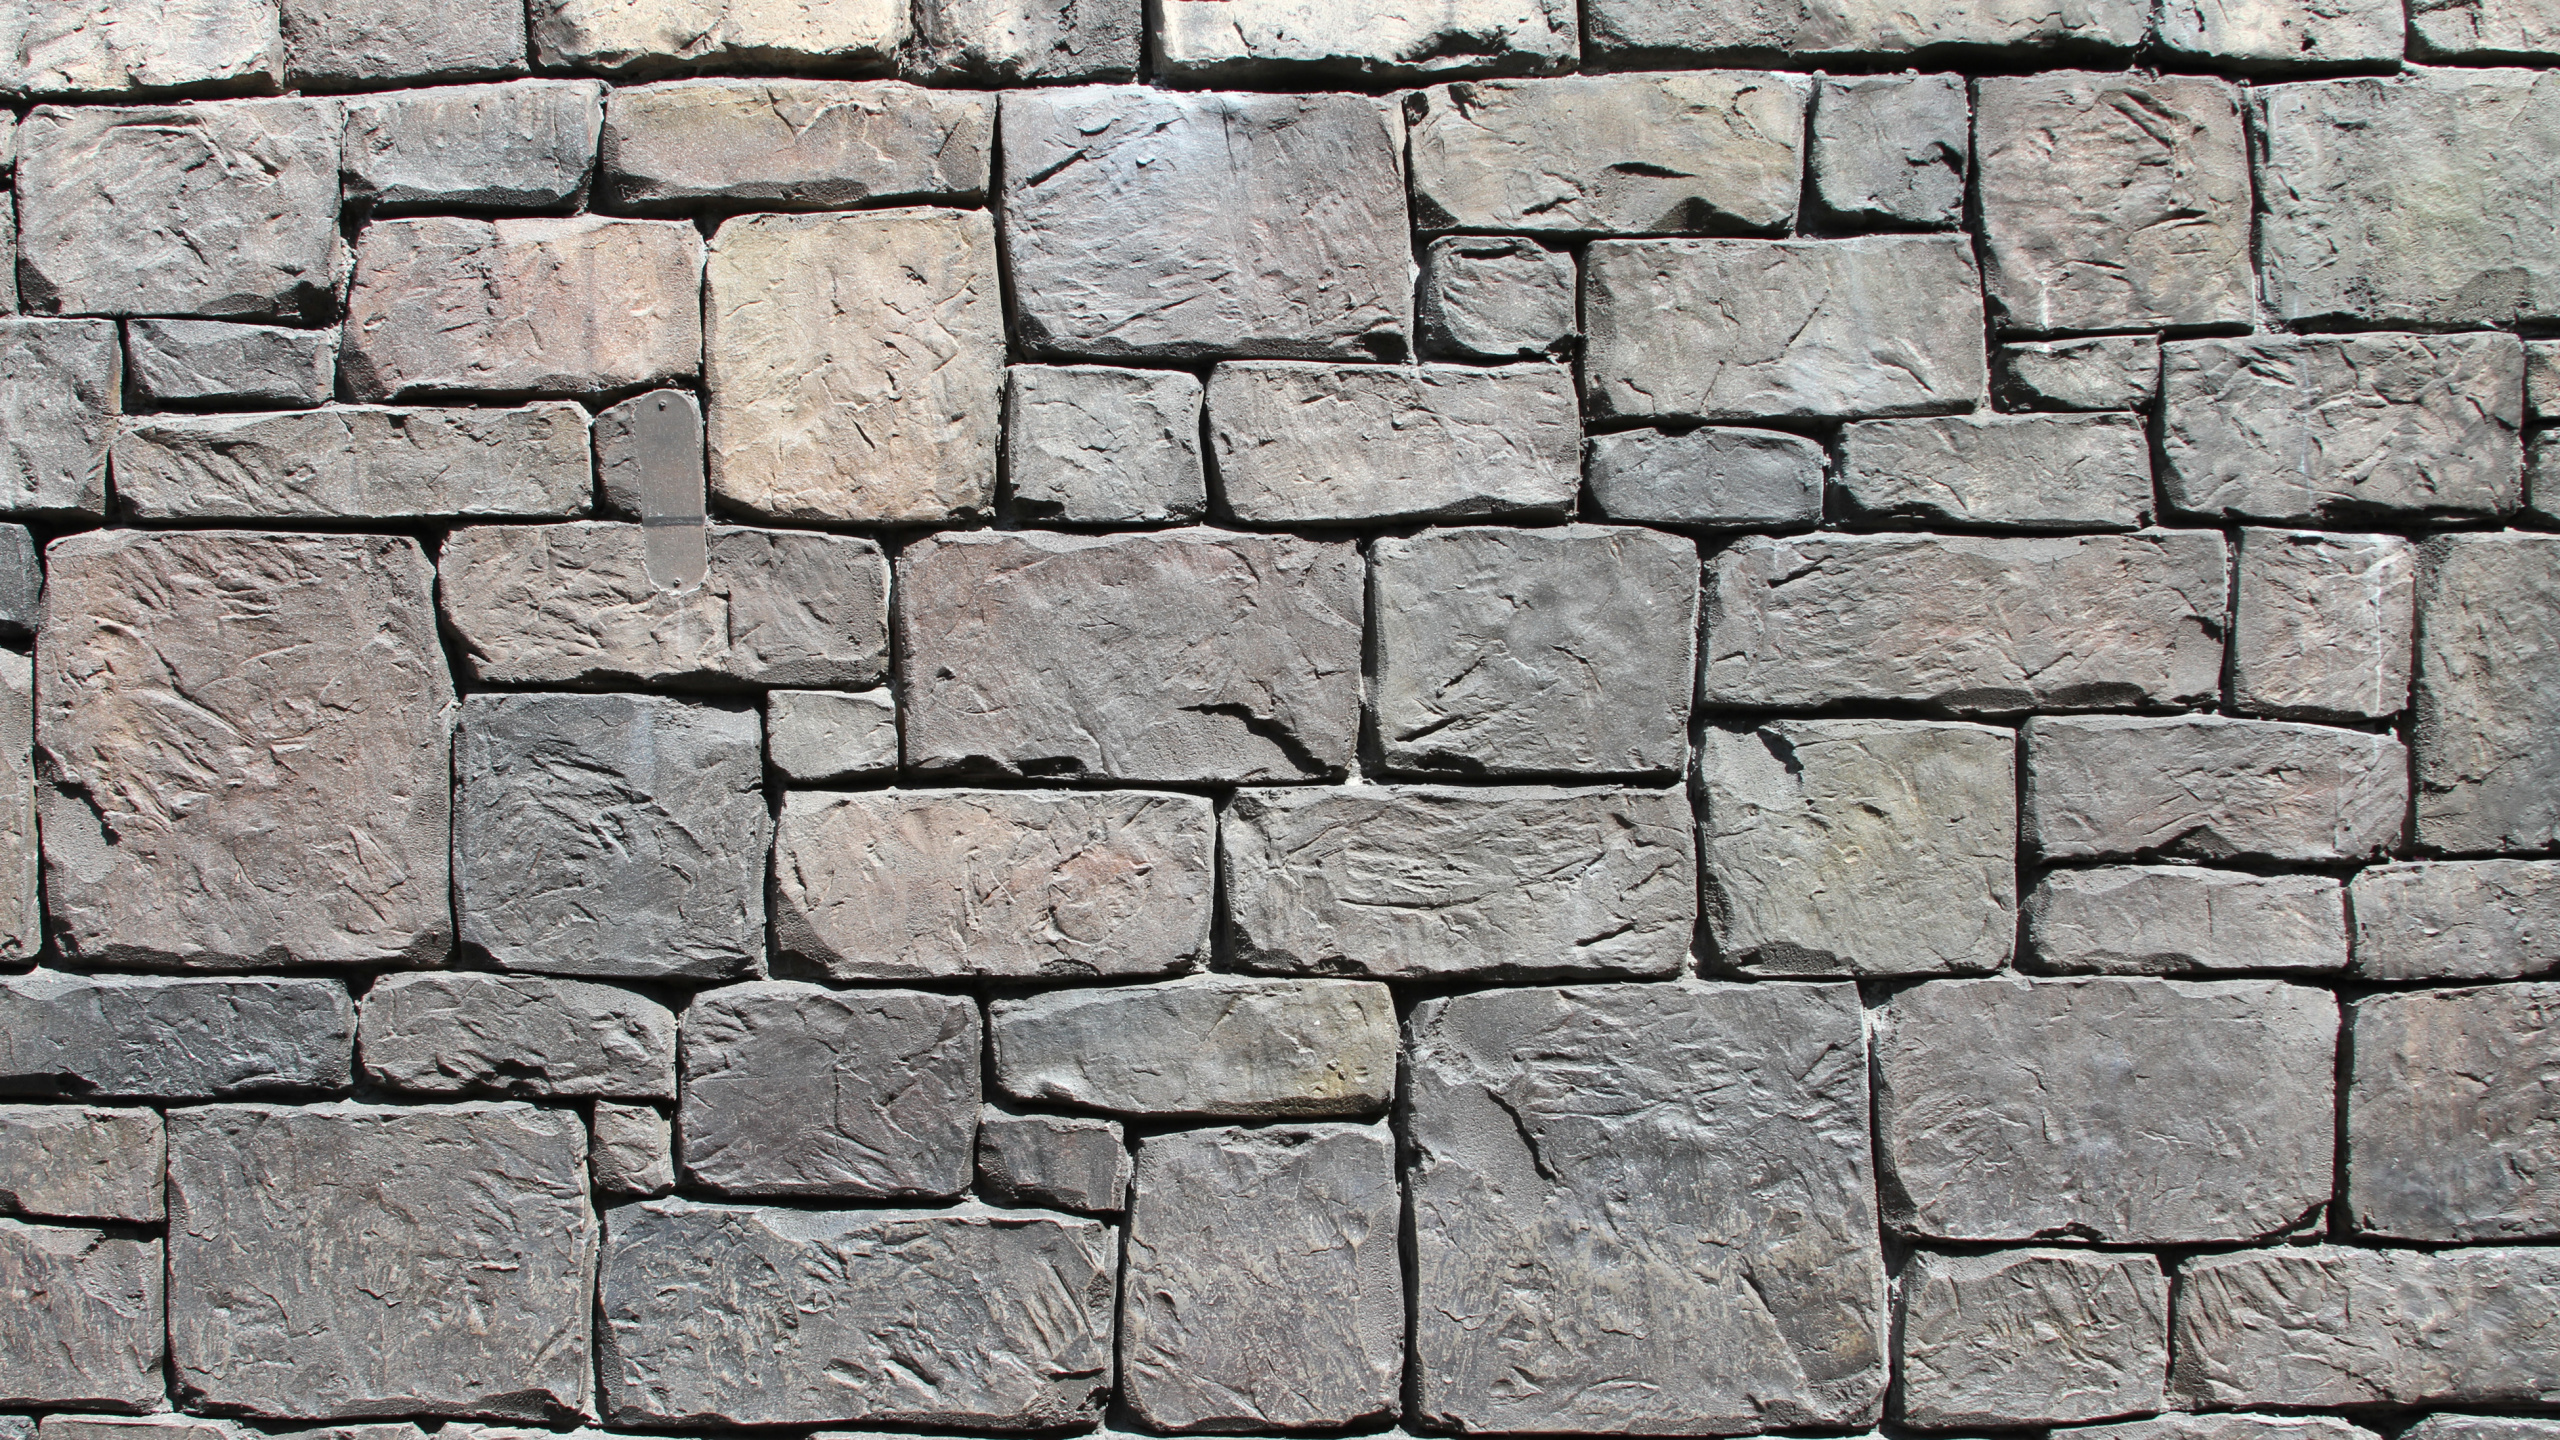 石壁, 砖, 砌砖, 鹅卵石, Wall26 石墙纹理 壁纸 2560x1440 允许